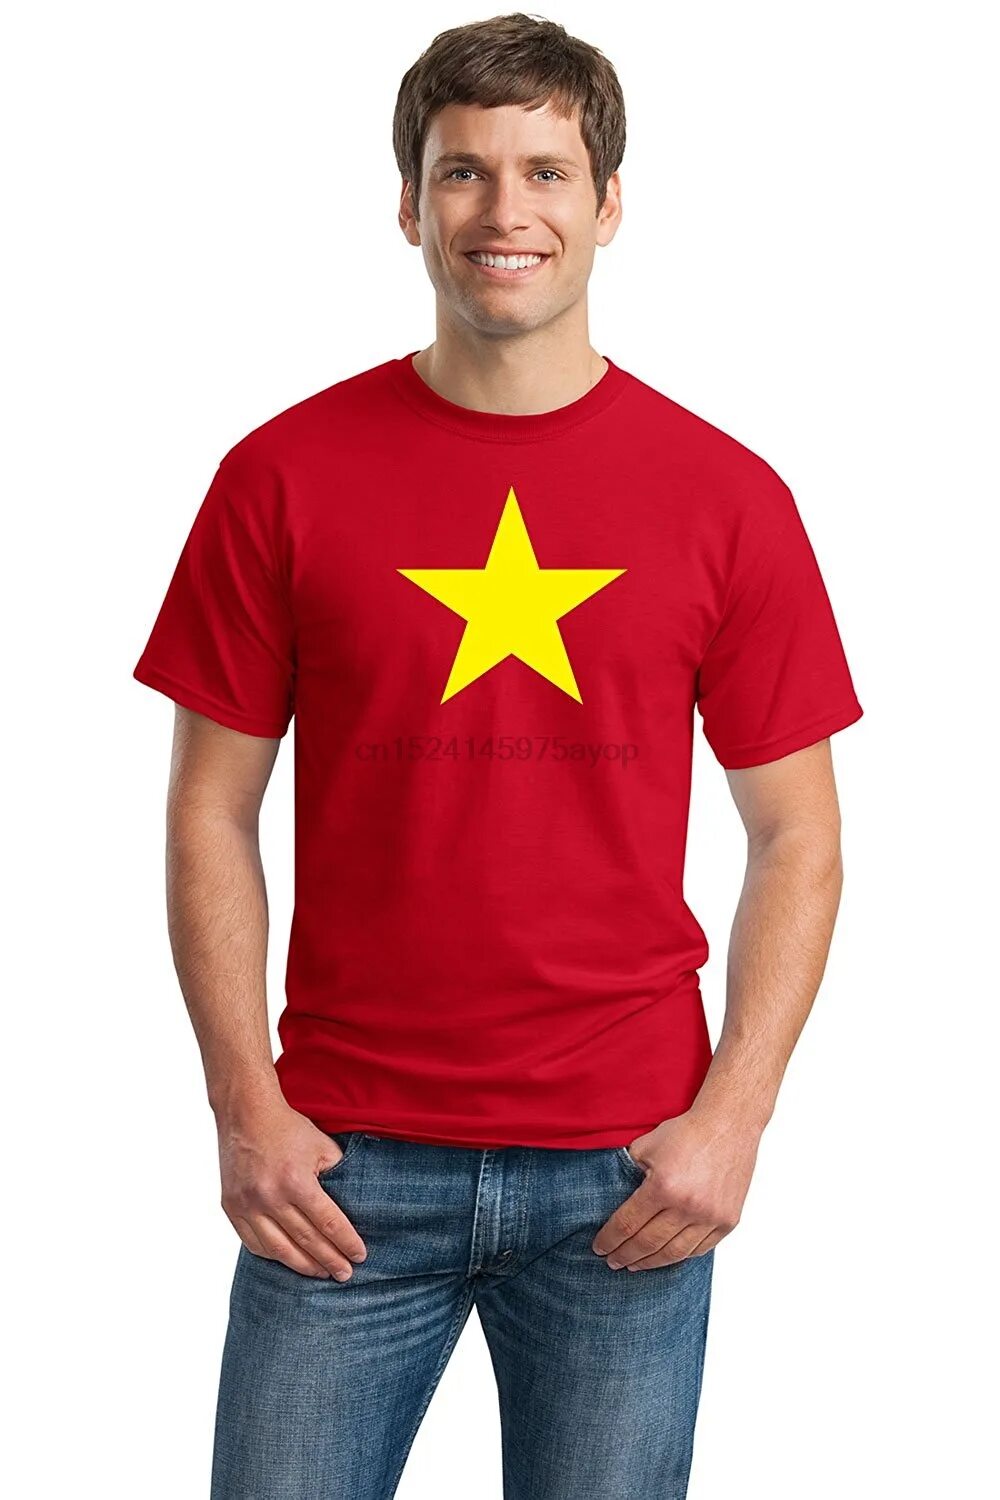 Быть твоей звездой вьетнам. Вьетнамские футболки. Футболка с флагом Вьетнама. Футболка Вьетнам звезда. Футболка с красной звездой.